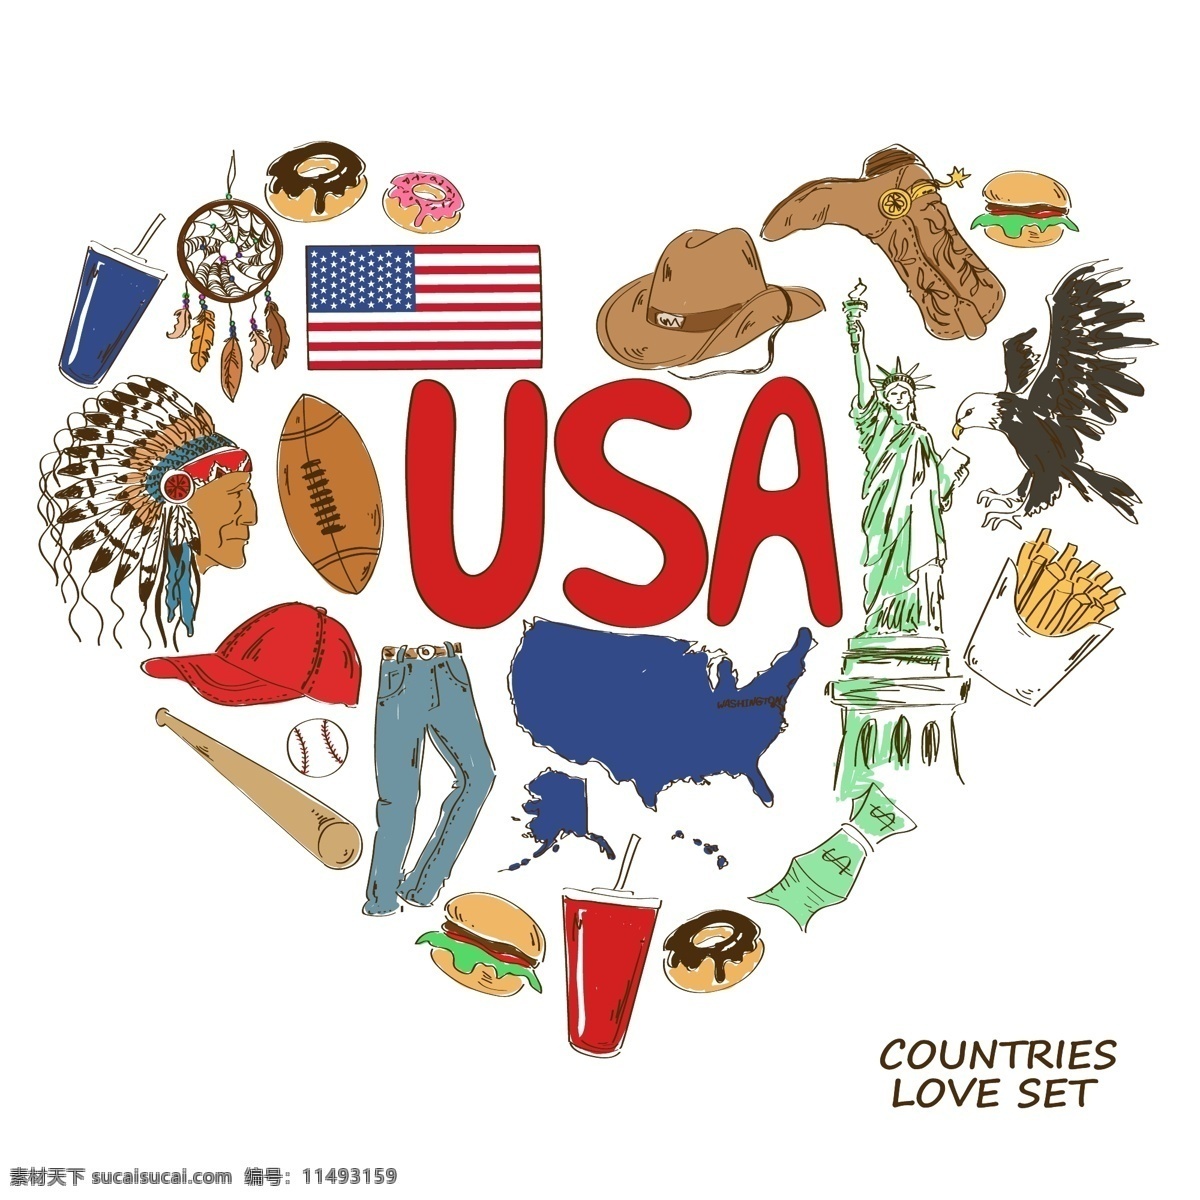 美国国家元素 美国 国家元素 国家象征 国家图标 手绘 矢量 设计素材库 文化艺术 绘画书法